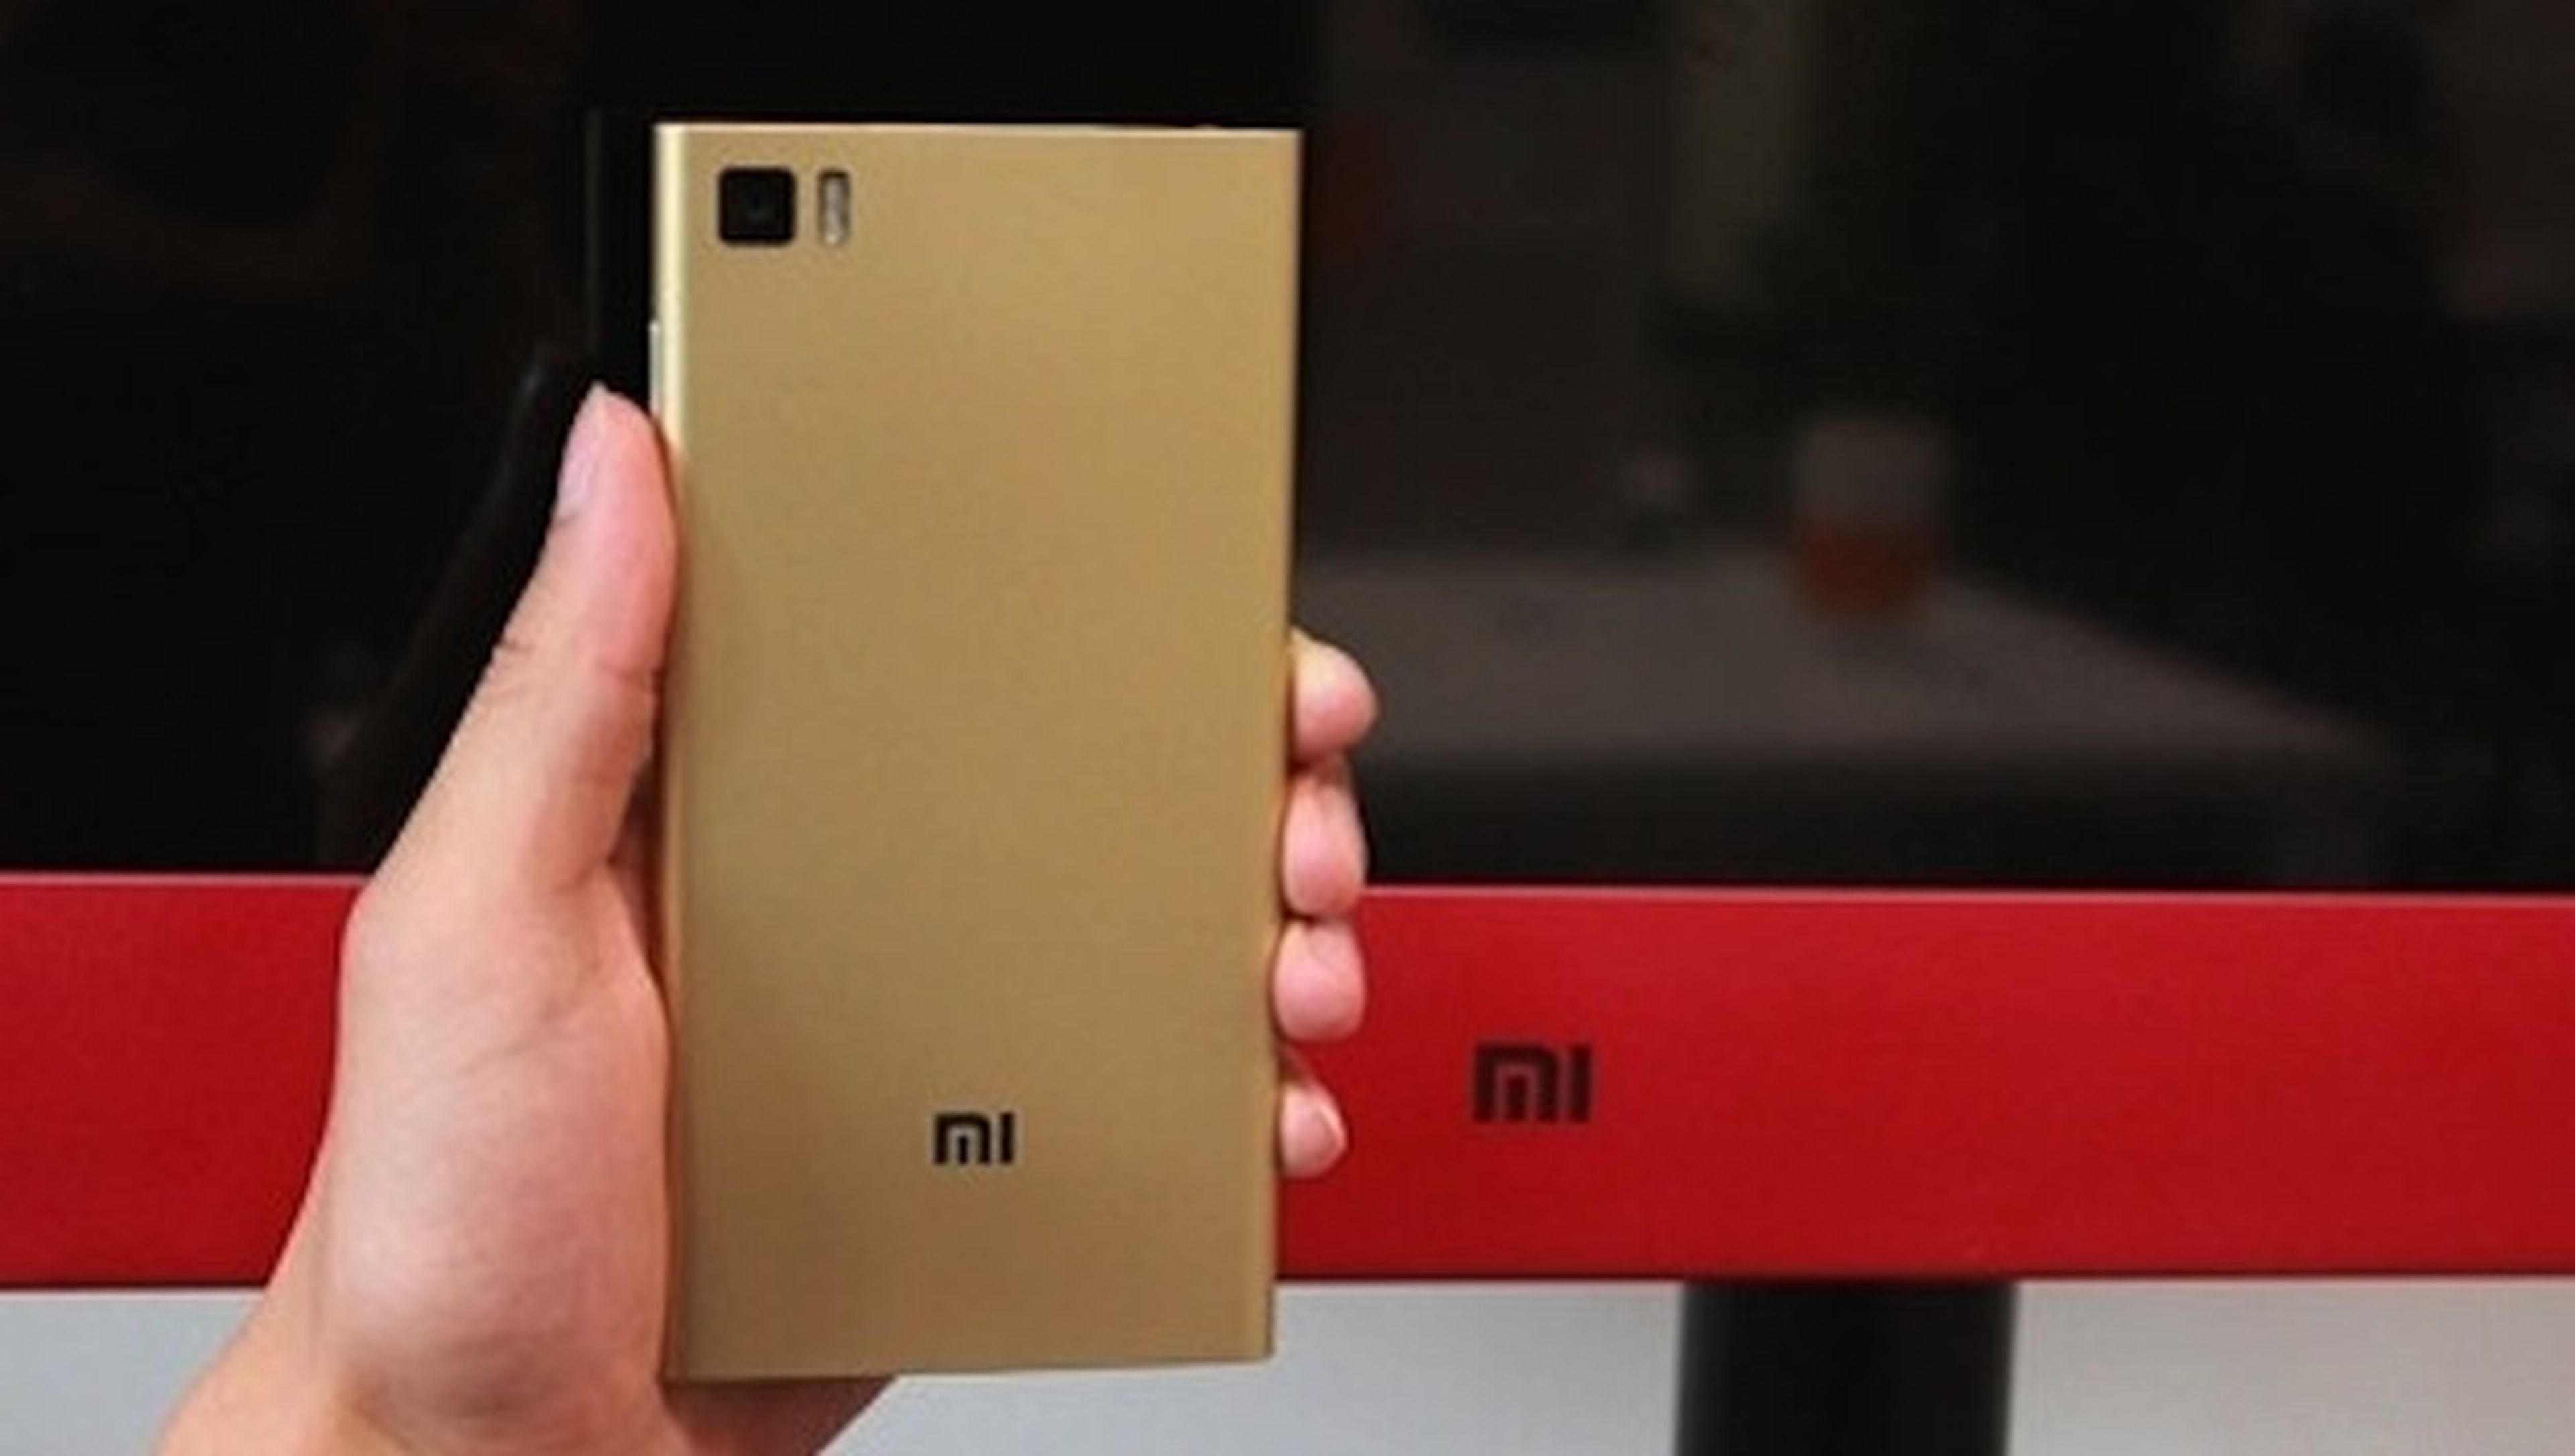 Aparecen nuevas imágenes del Xiaomi Mi3 de color dorado